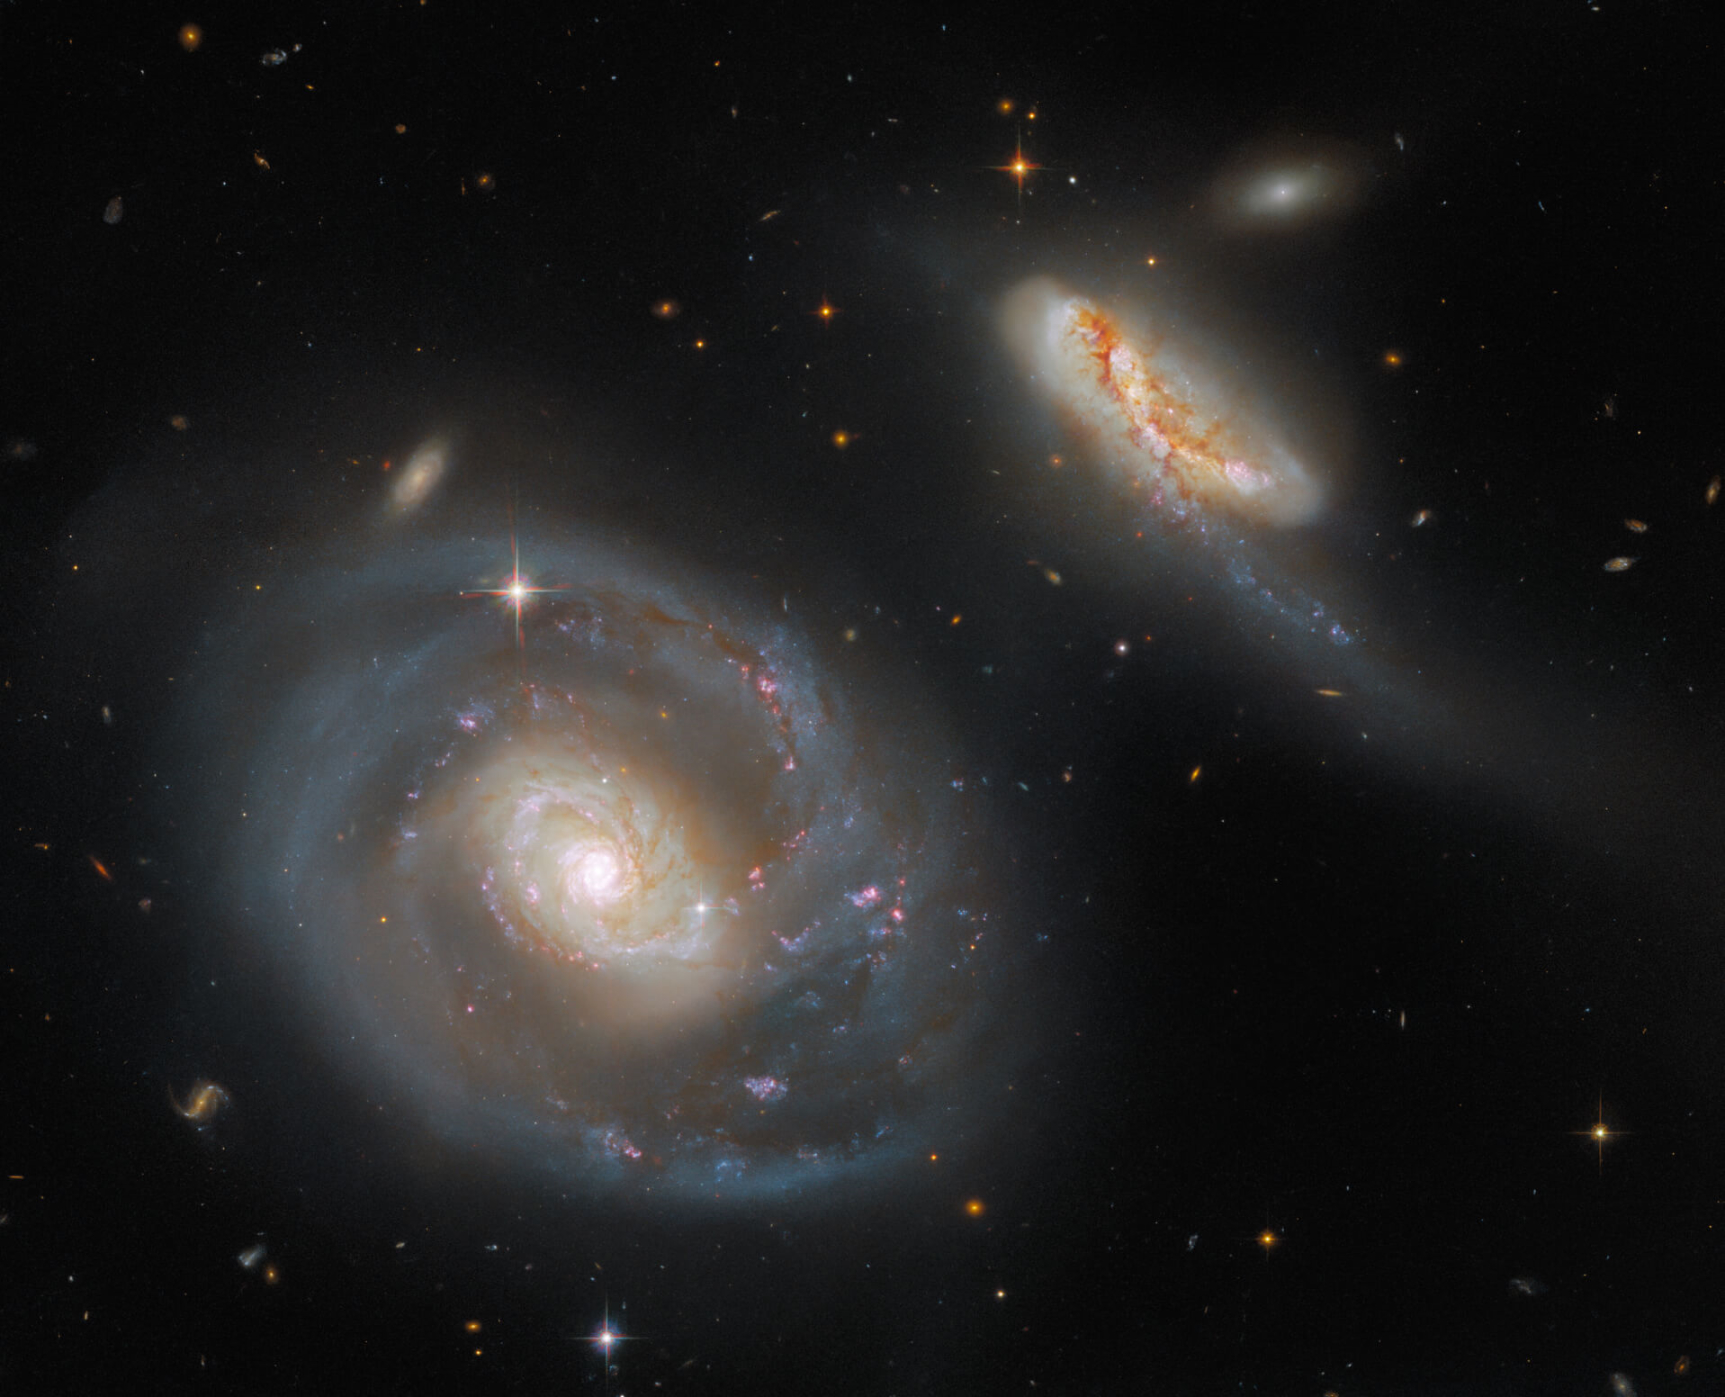 Hubble teleskop nedavno je 'uhvatio' novu sliku galaktičkog para Arp 298 sastavljenog od galaksija NGC 7469 i IC 5283 (©NASA/ESA).